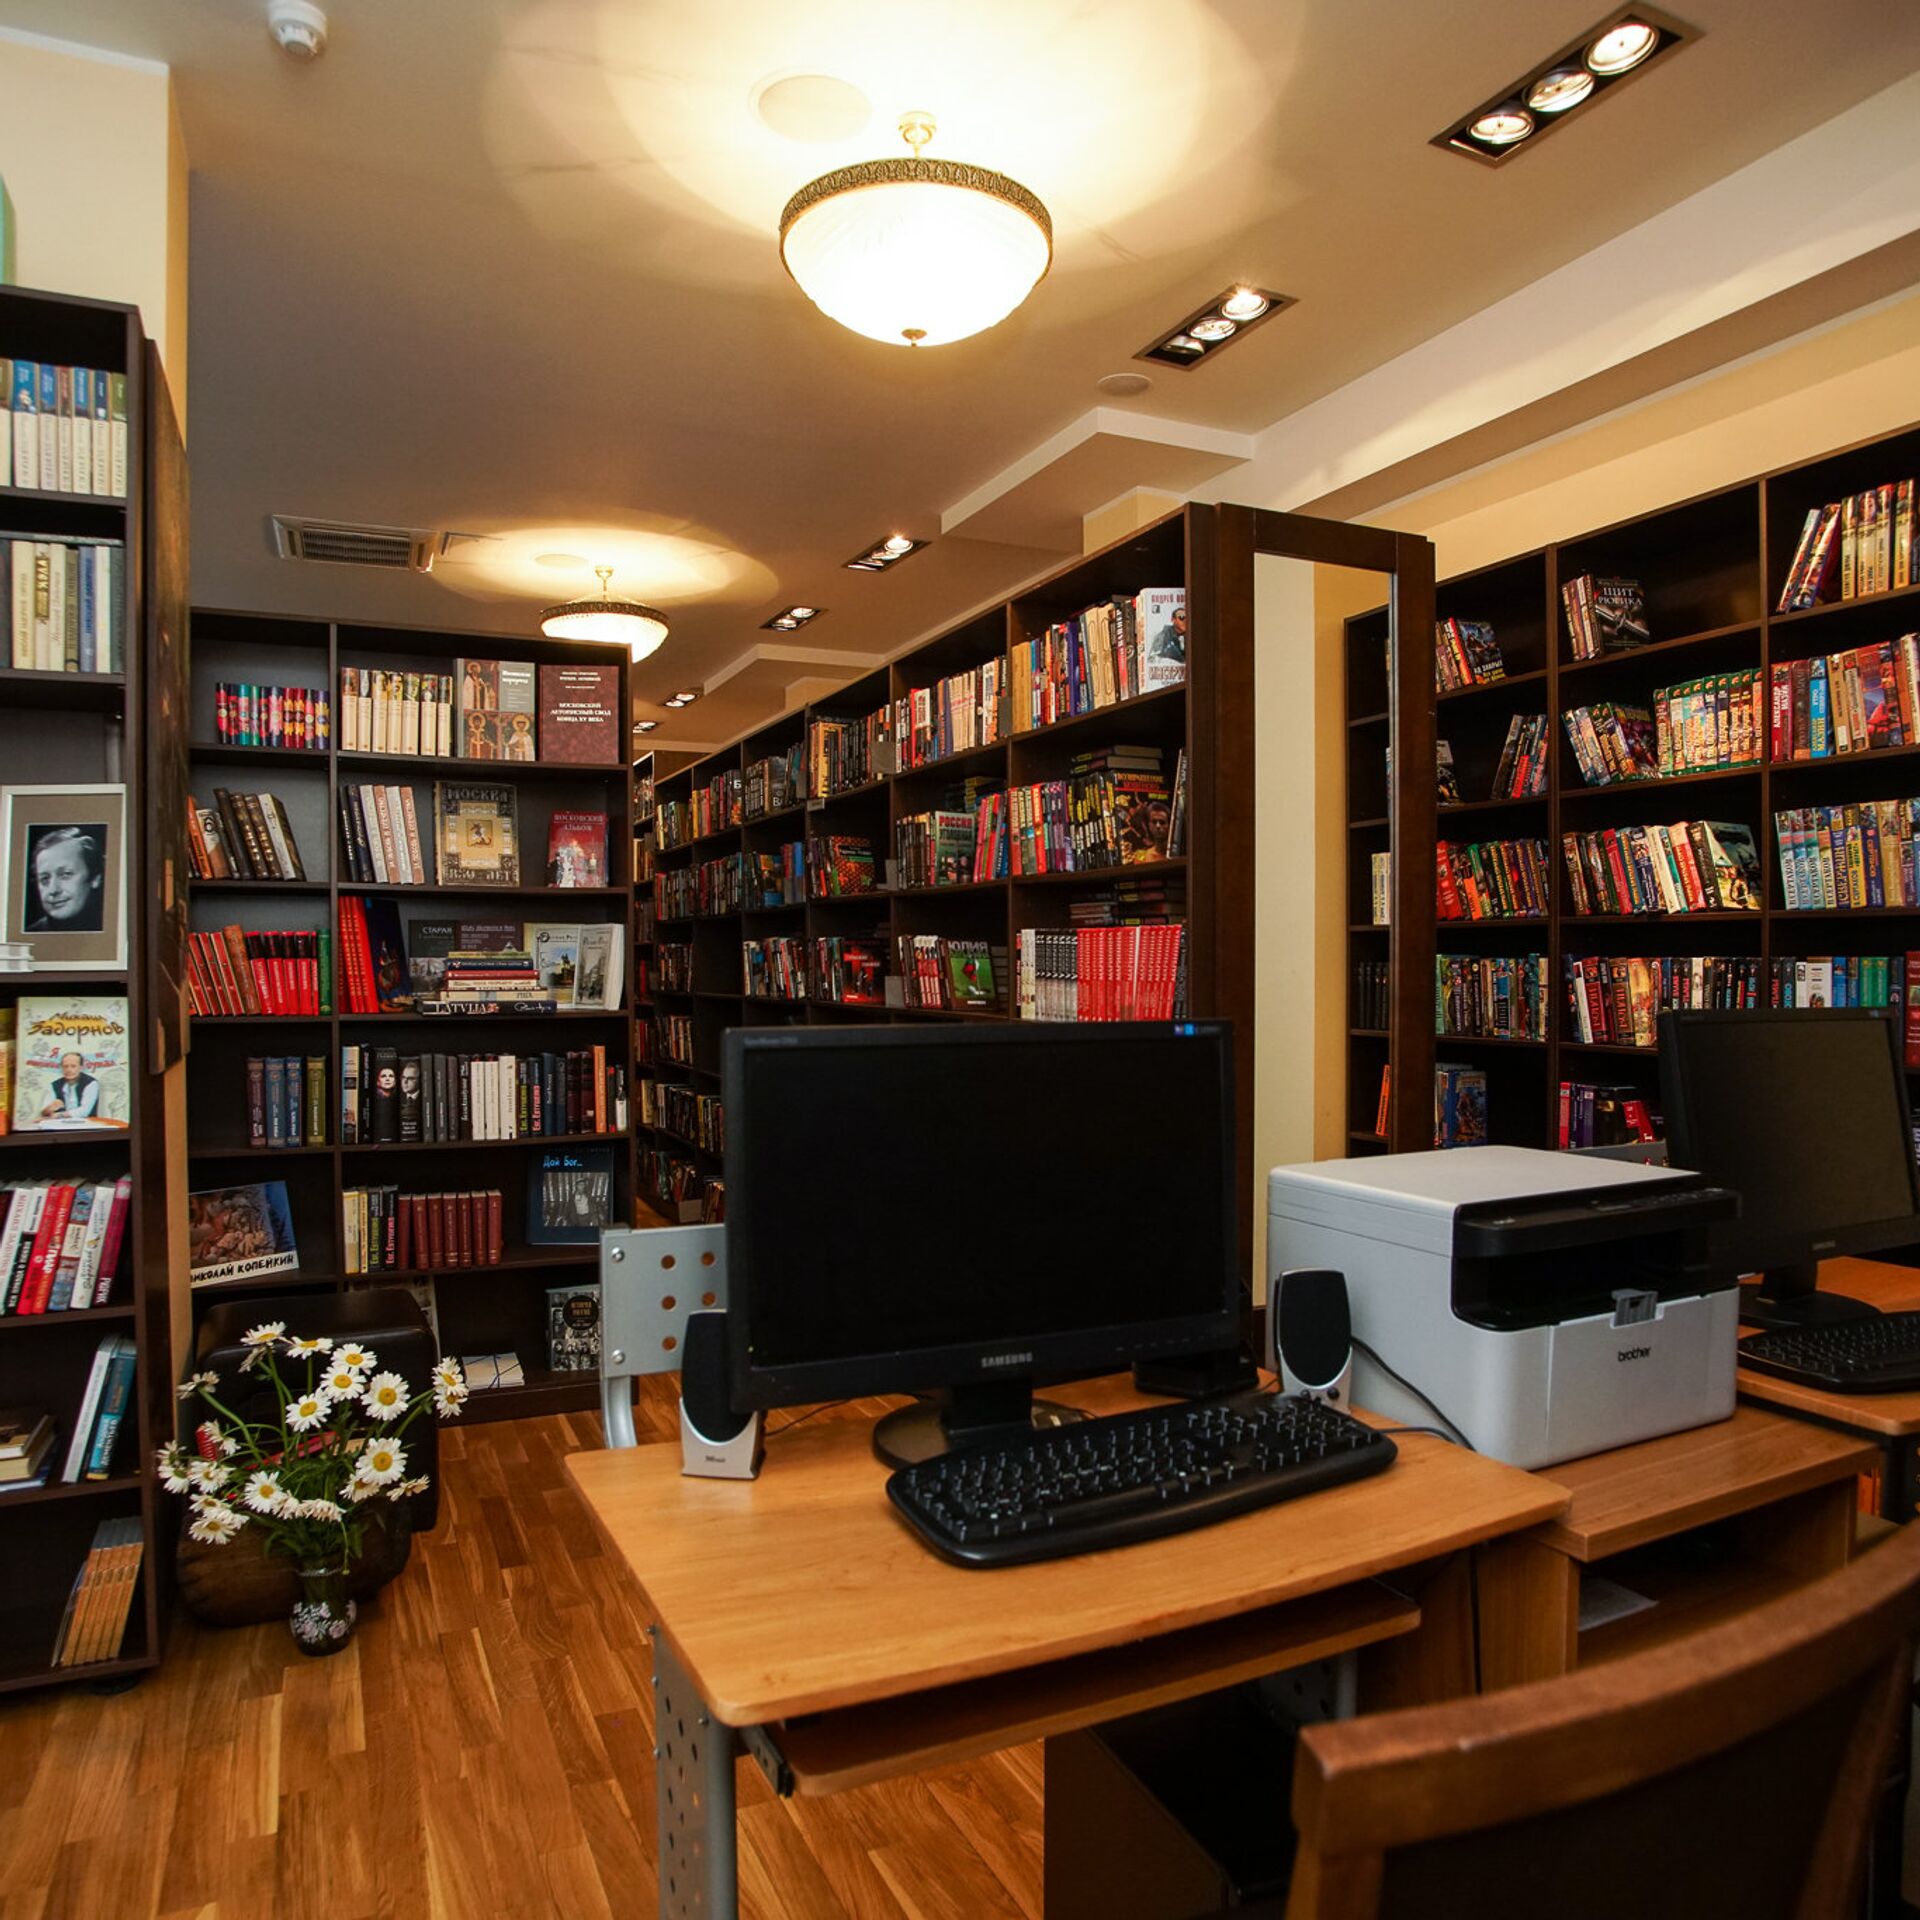 Библиотека открывалась в восемь. Библиотека Задорнова в Риге. Библиотека Николая Задорнова. Рижская библиотека.